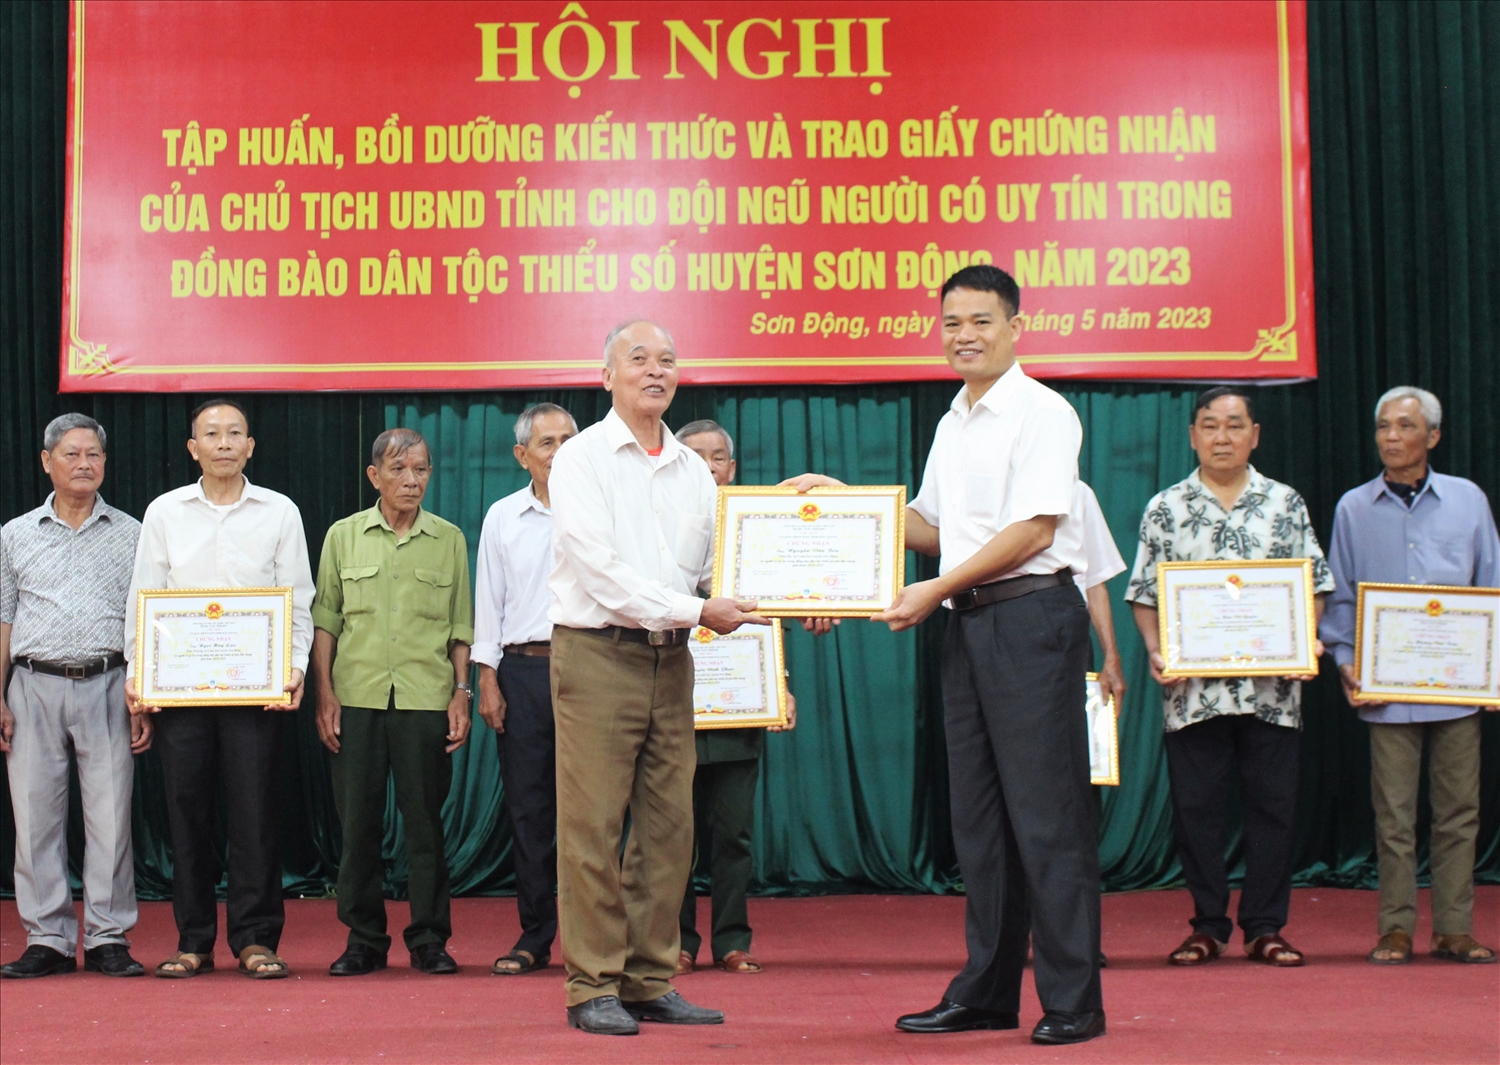 Phó trưởng Ban Dân tộc tỉnh Bắc Giang Lê Bá Xuyên, trao Giấy chứng nhận cho Người có uy tín